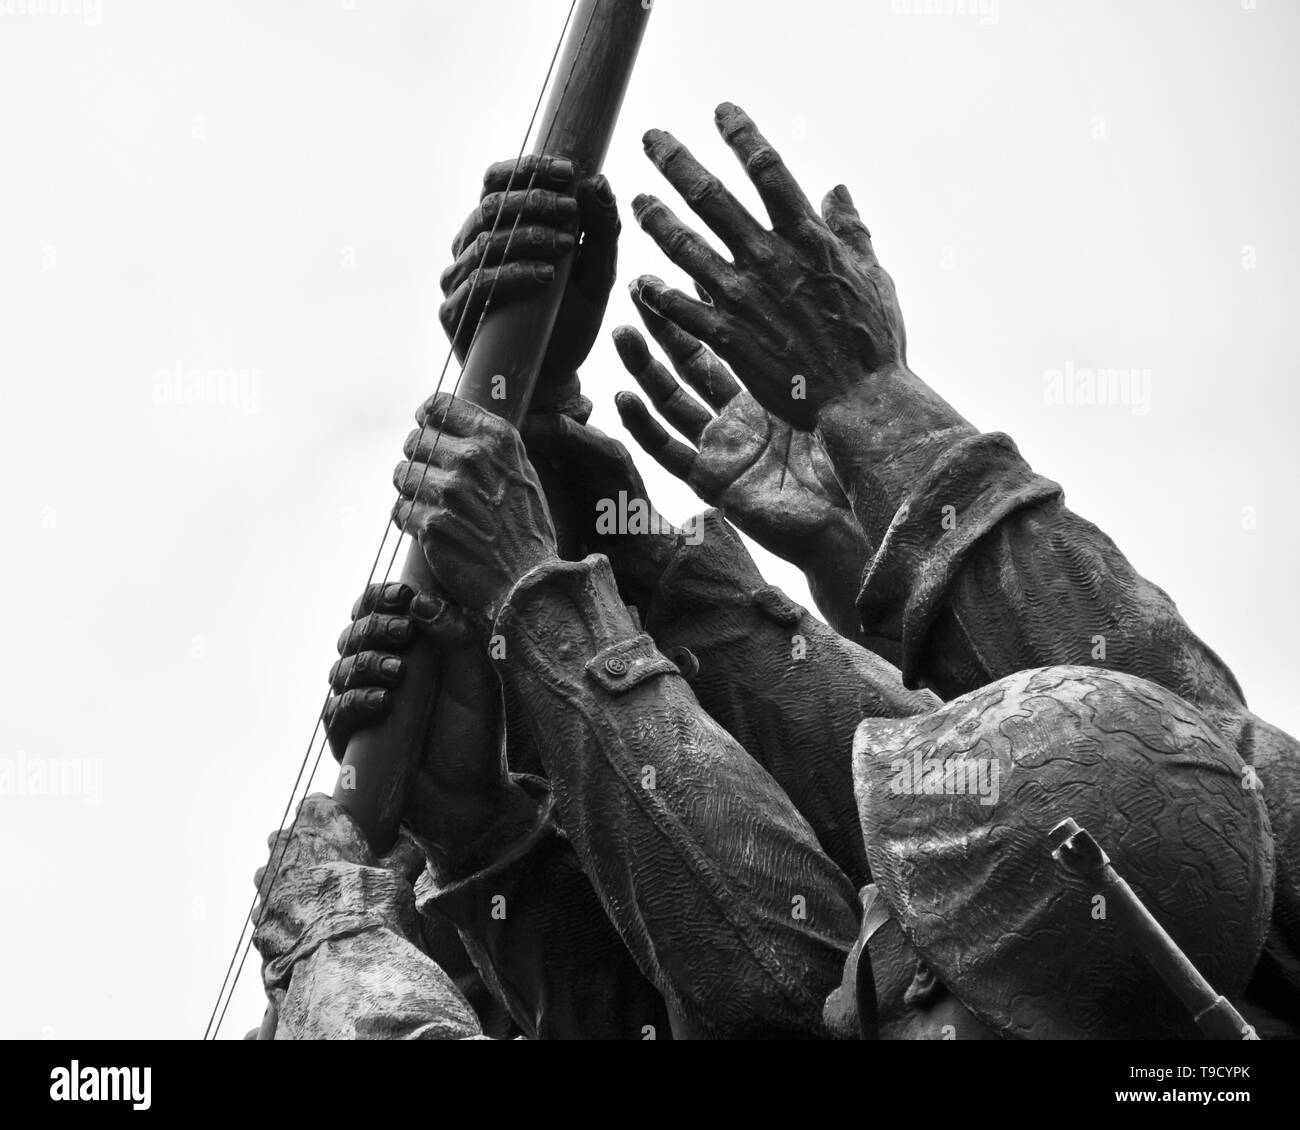 La U.S. Marine Corps War Memorial, que retrata el izamiento de la bandera norteamericana durante la batalla de Iwo Jima en la segunda guerra mundial. Foto de stock